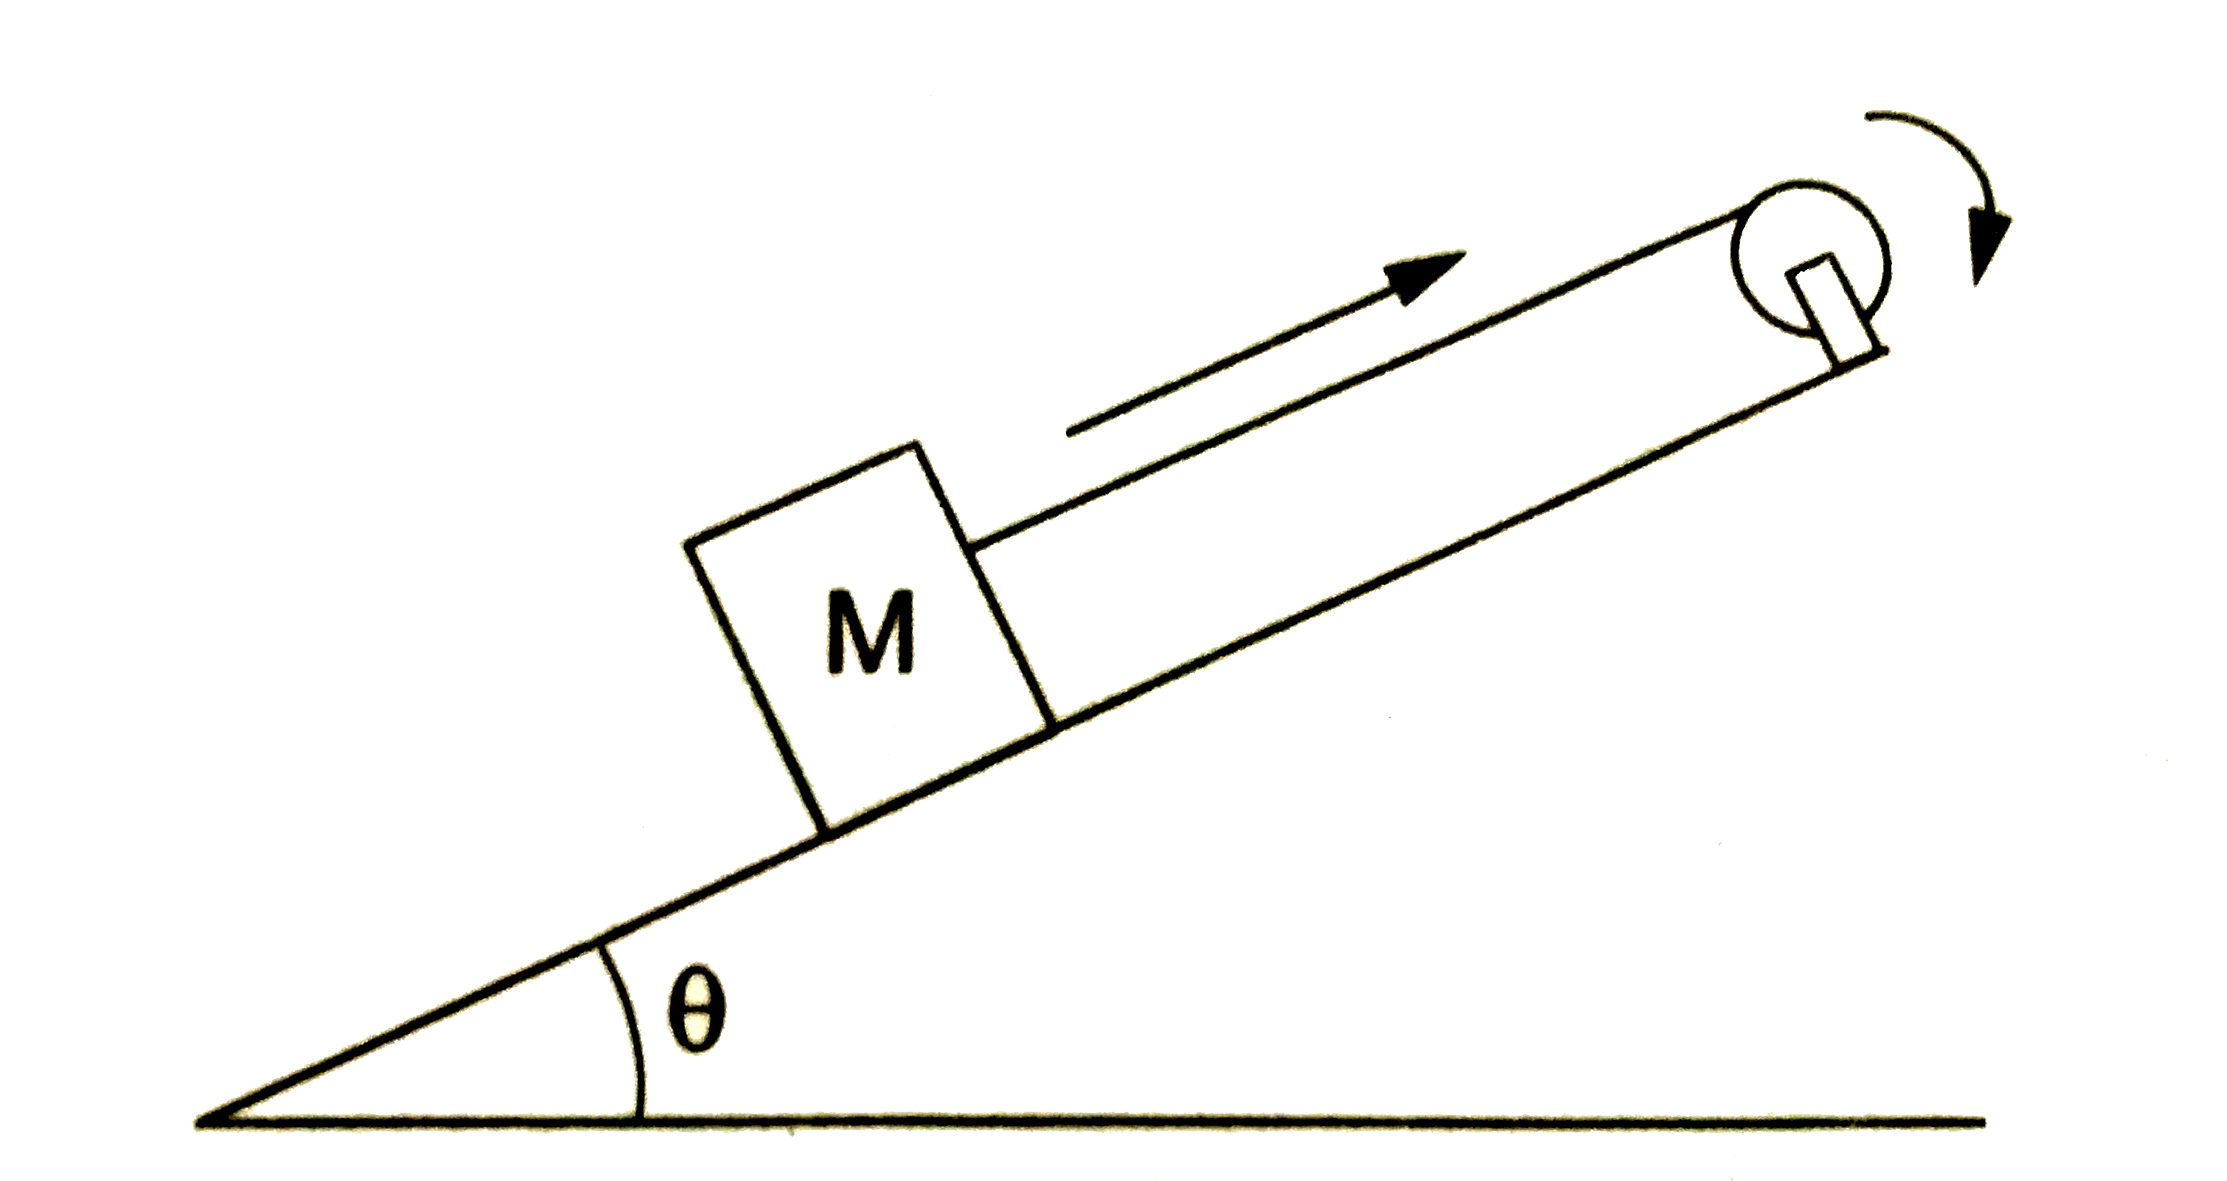 एक पहिये की त्रिज्या r तथा अपने अक्ष के प्रति जड़त्व आघूर्ण I है। इसे आनंत कोण theta  वाले आनंत तल के ऊपरी सिरे पर क्लैप कर दिया गया है। (चित्र 18,W2)। पहिये की परिधि पर बनी खाँच में एक लंबी रस्सी लपेट दी गई है, जिसके दूसरे सिरे से M द्रब्यगान का एक गुटका बँधा है। गुटका आनंत तल पर बिना घर्षण के फिसल सकता है। t = 0 समय पर पहिये को कोणीय वेग omega देकर छोड़ दिया जाता है तथा वह चित्र में दिखाए अनुसार दक्षिणावर्ती दिशा में घूमने लगता है। परिणामतः, गुटका आनंत तल पर ऊपर की ओर 'फिसलता है। रुकने के पहले गुटका कितनी दूरी तय करेगा? माने कि रस्सी पहिये पर नहीं फिसलती है